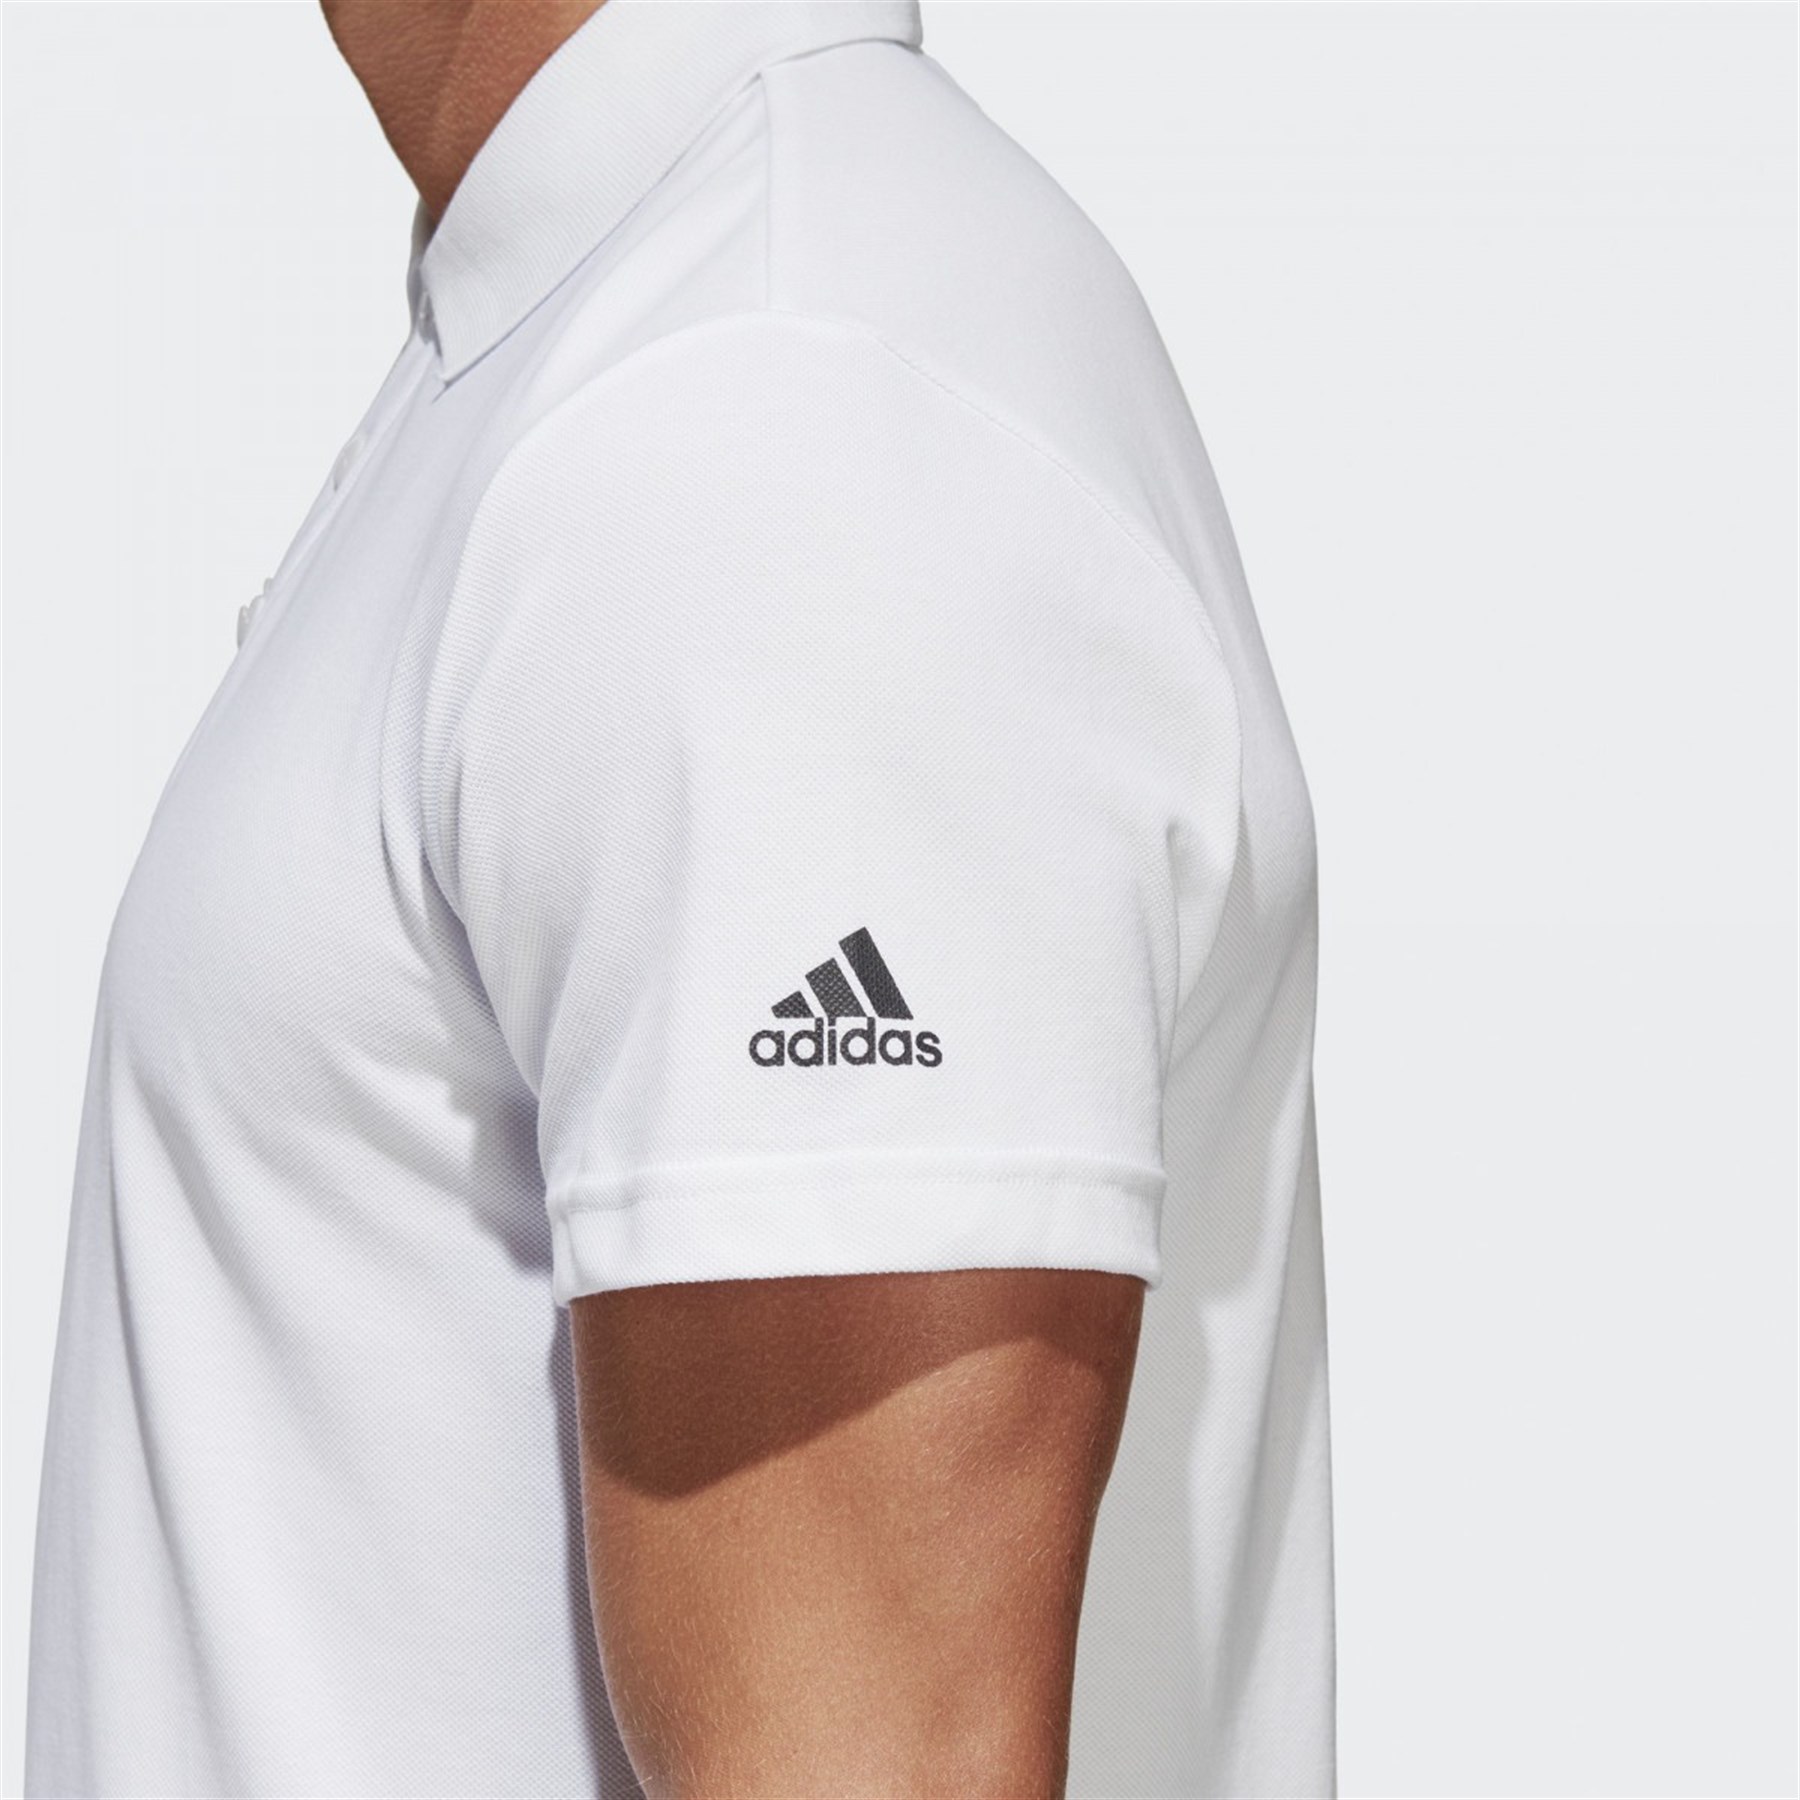 adidas erkek polo yaka t shirt